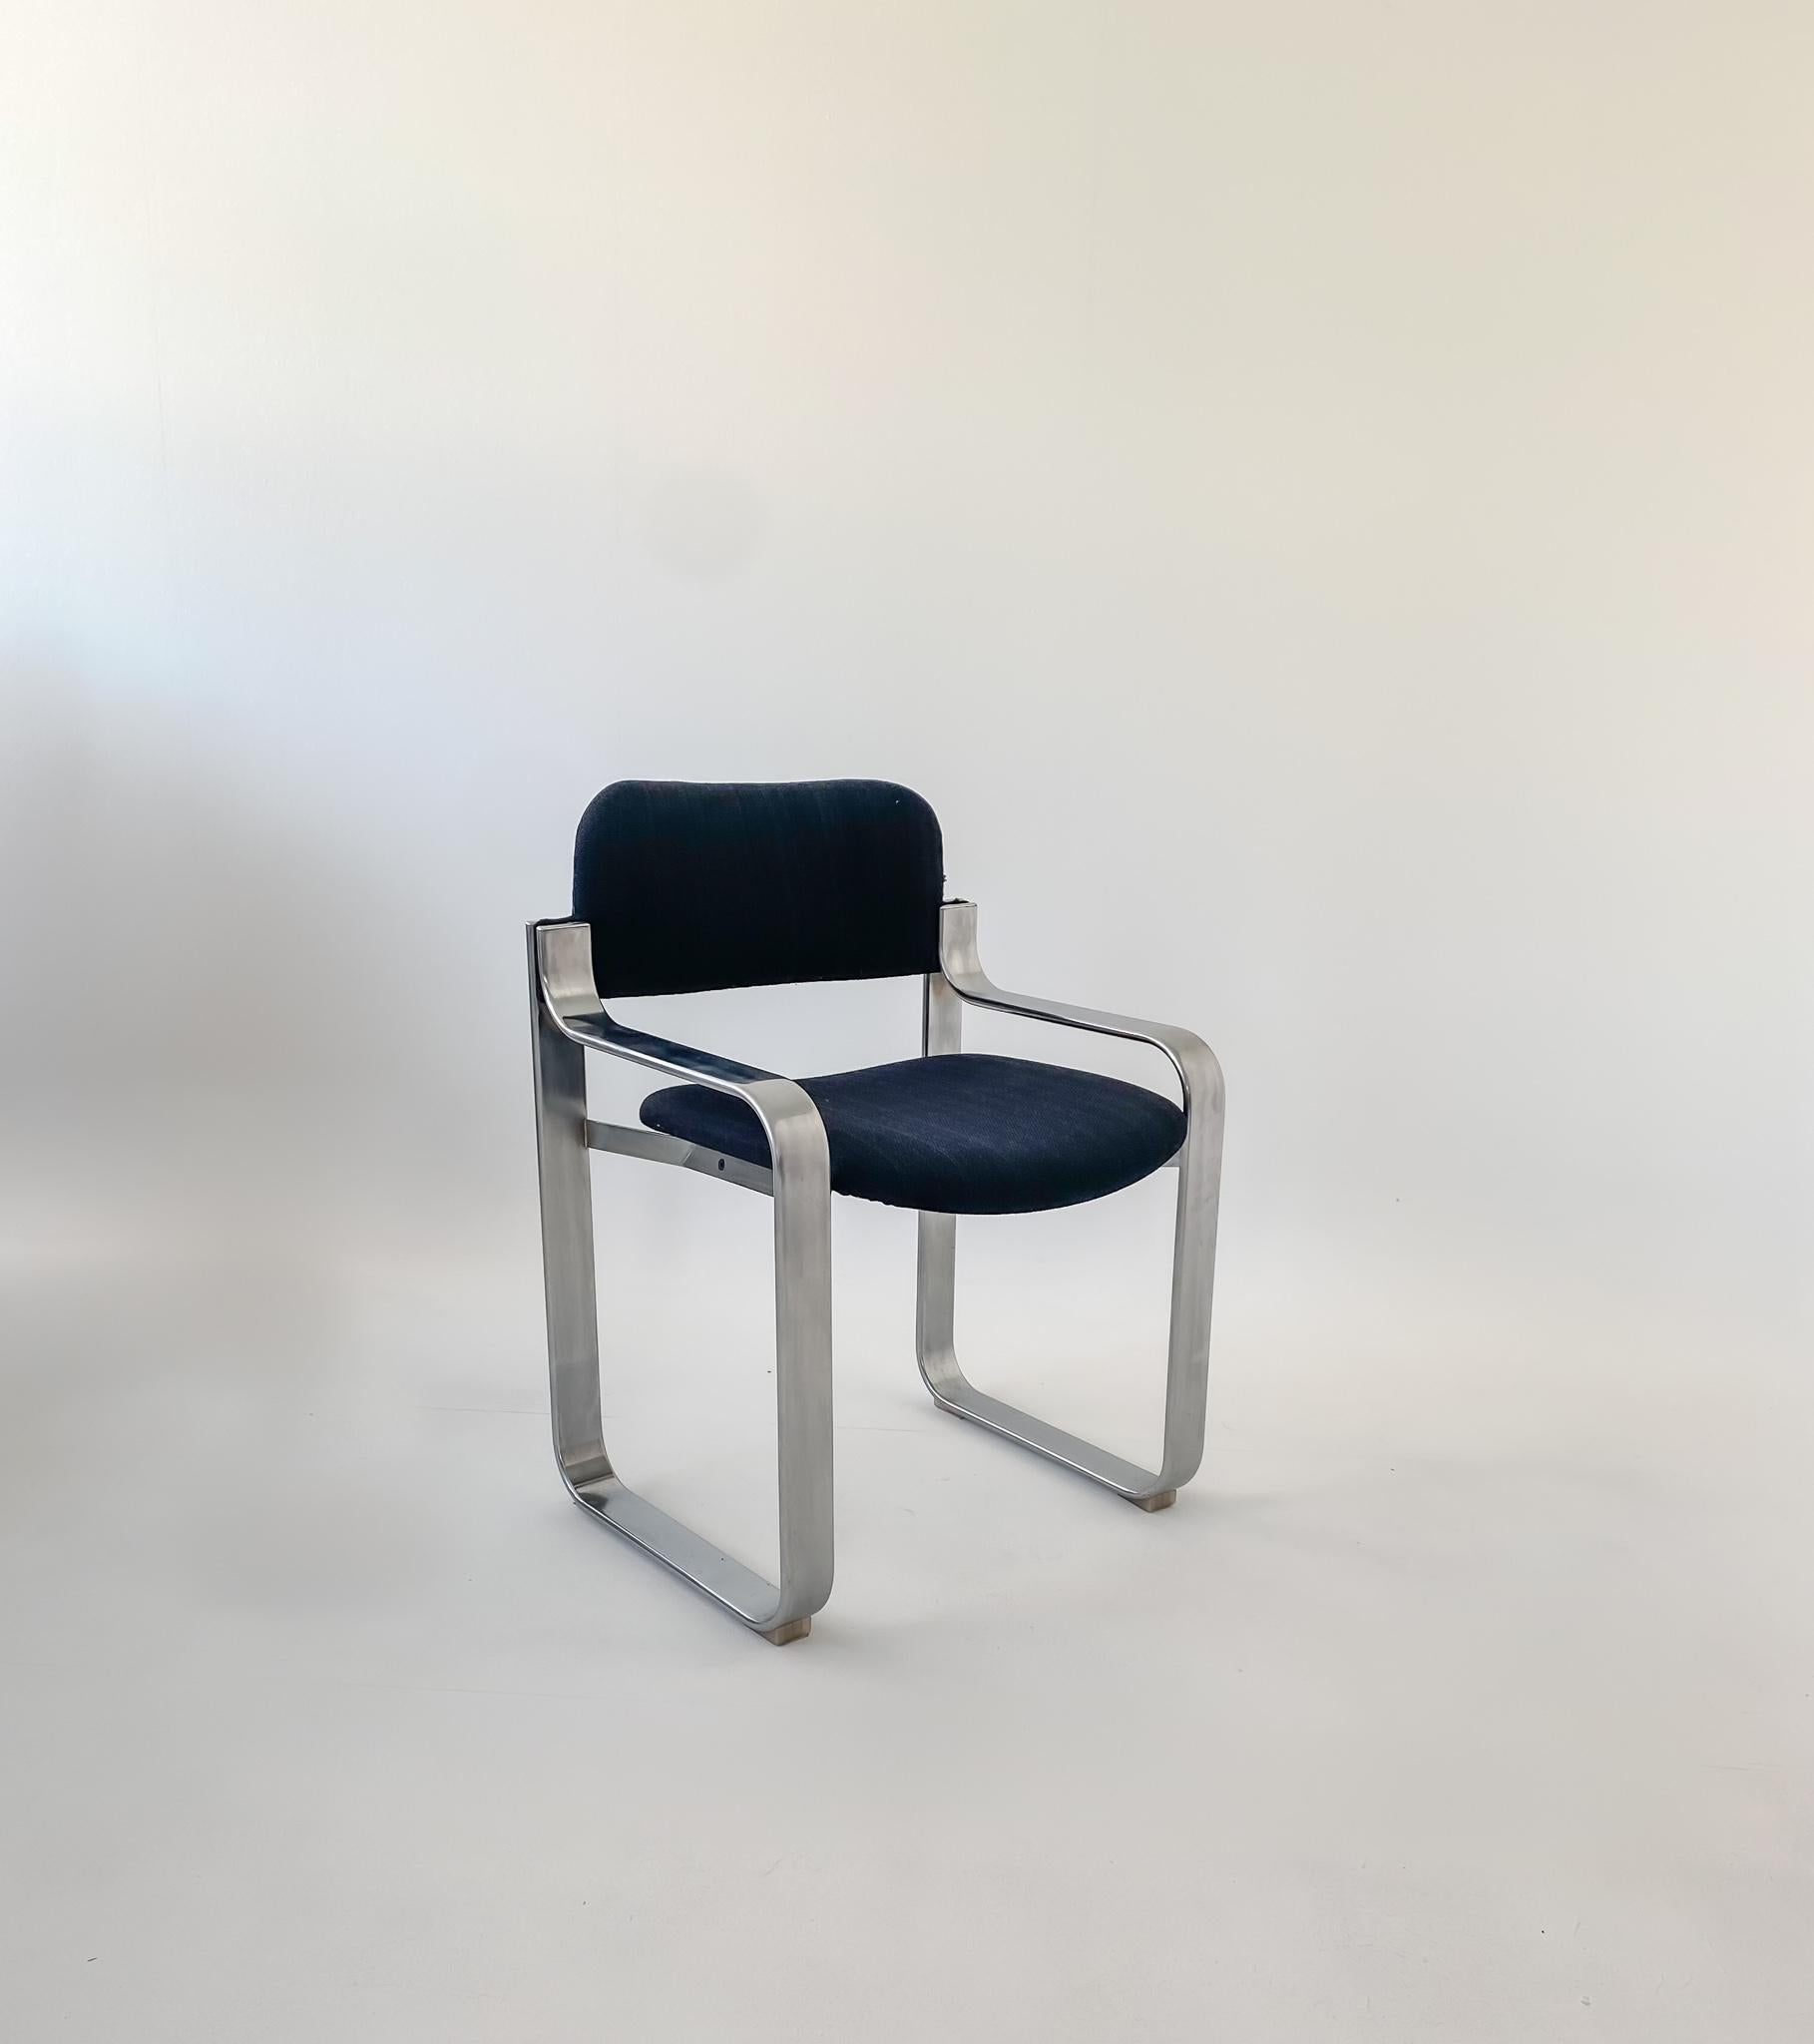 Moderner schwarzer Metallsessel aus der Jahrhundertmitte von Eero Aarnio für Mobile Italia, 1970er Jahre.

Dieser schwarze Sessel ist aufgrund seines einzigartig geschwungenen Metallgestells sofort als ein Meisterwerk des finnischen Designers Eero